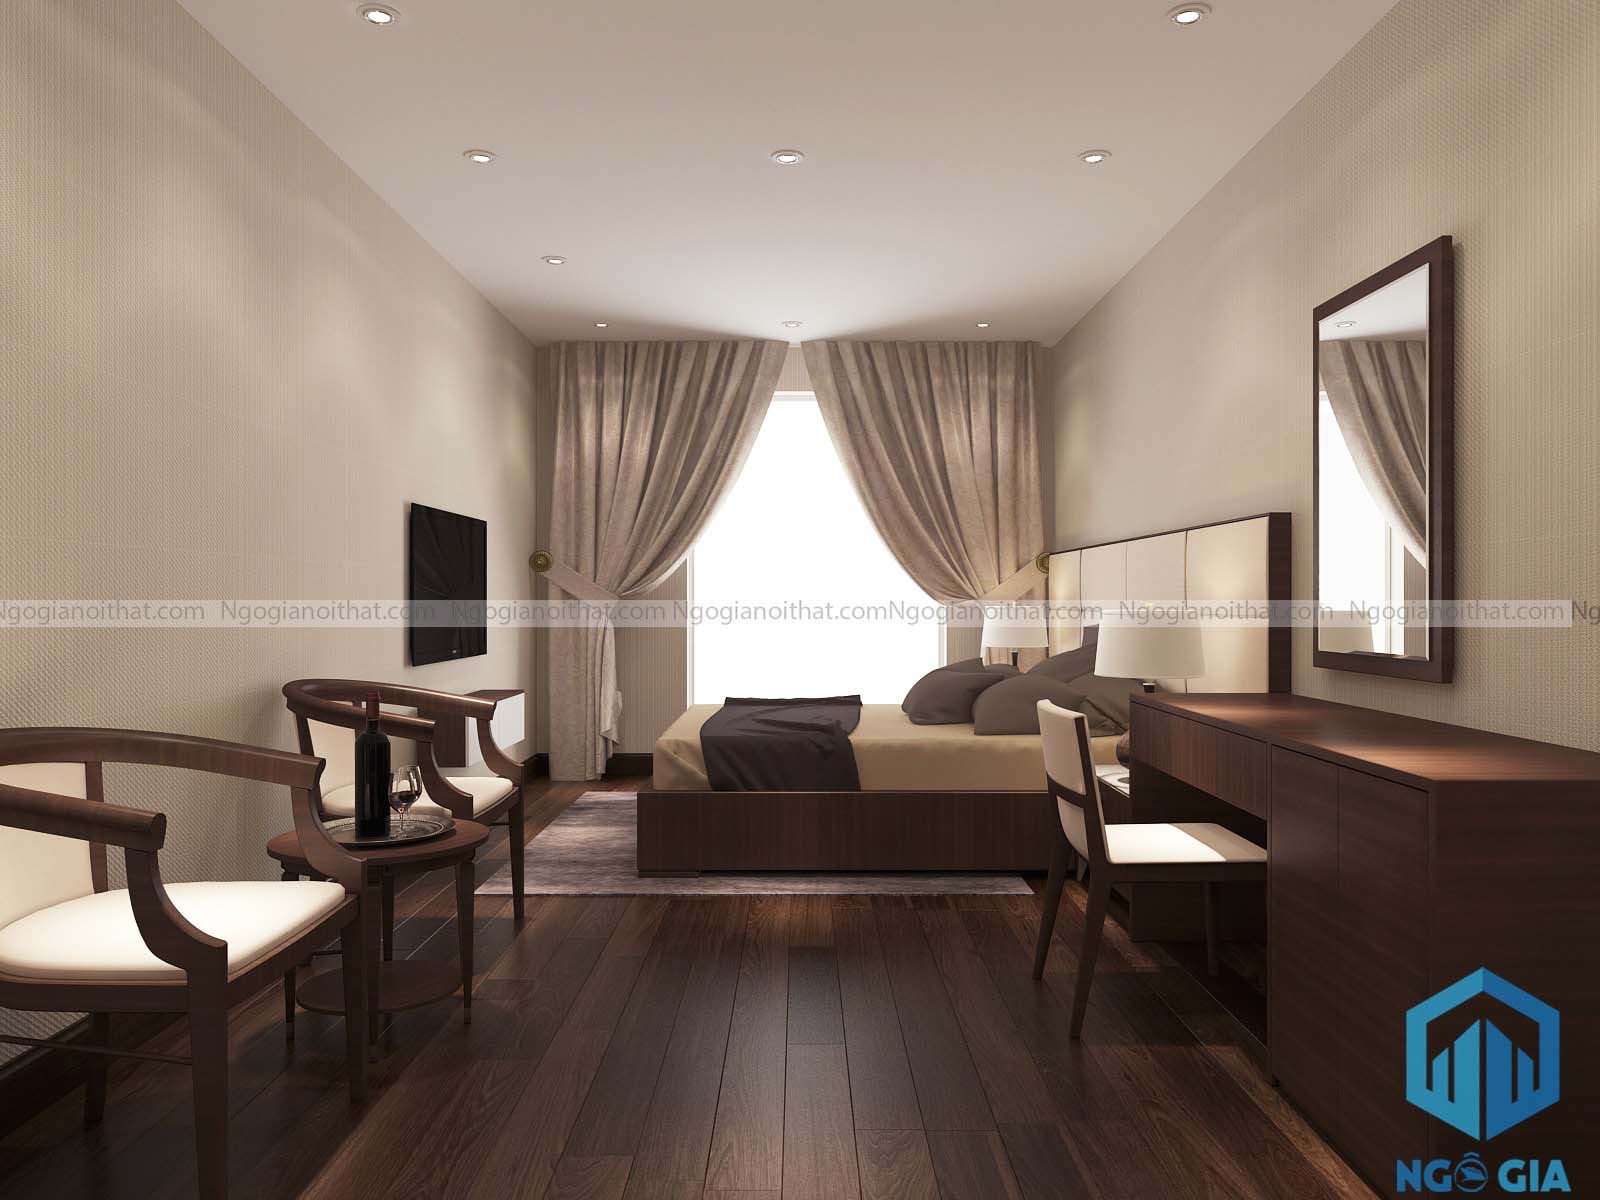 Khi lên thiết kế nội thất, không gian phòng ngủ sẽ hiện ra với những mong muốn của bạn 